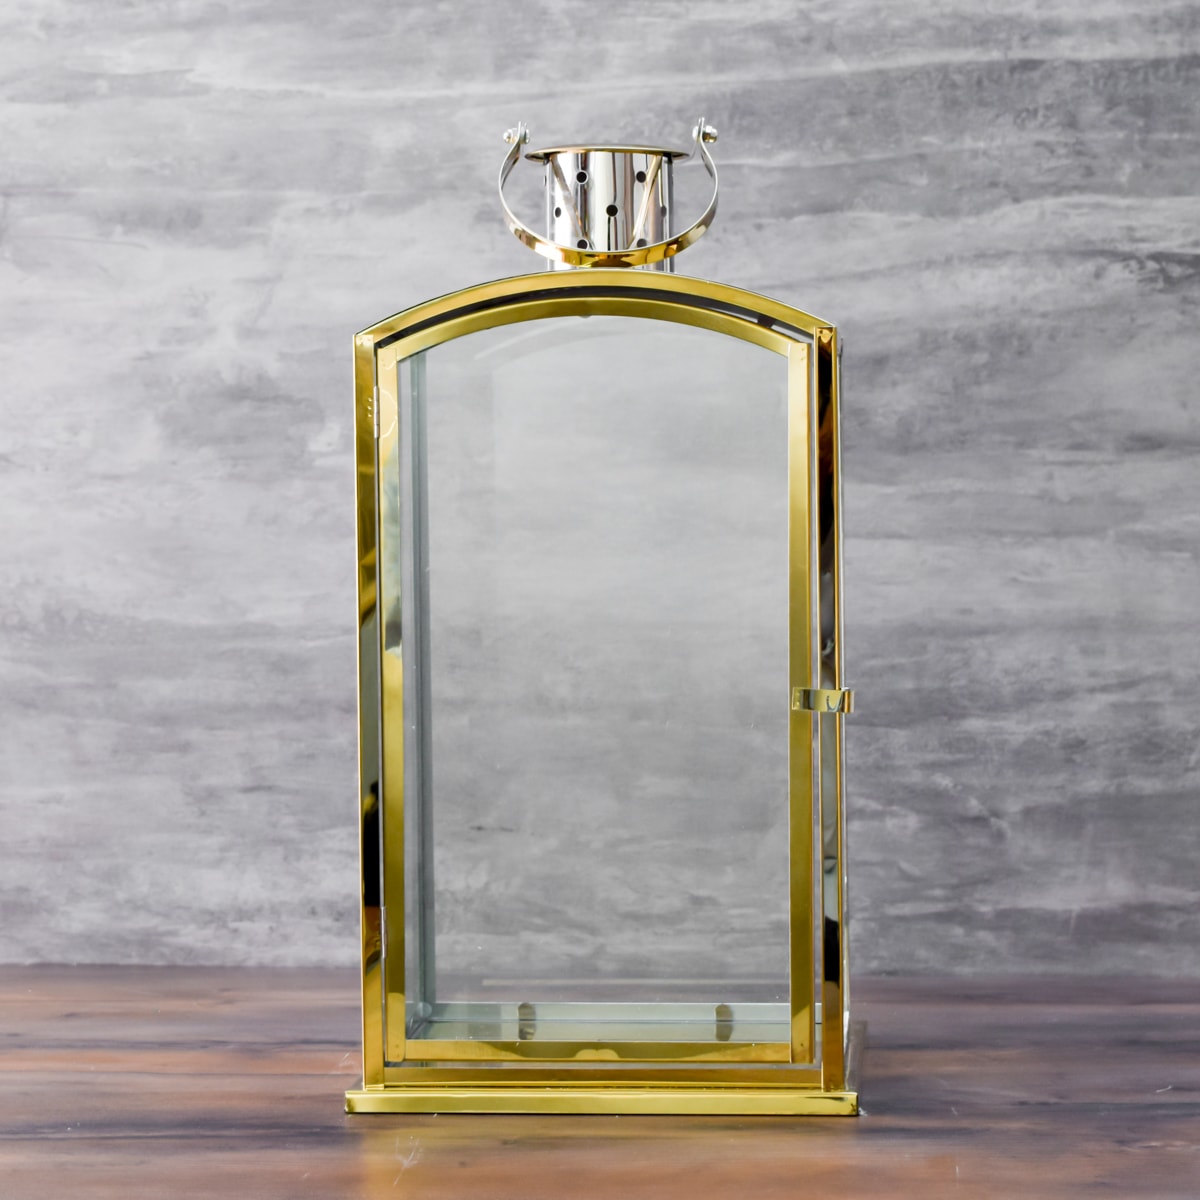 Wynston Golden Lantern - Large - Home Artisan